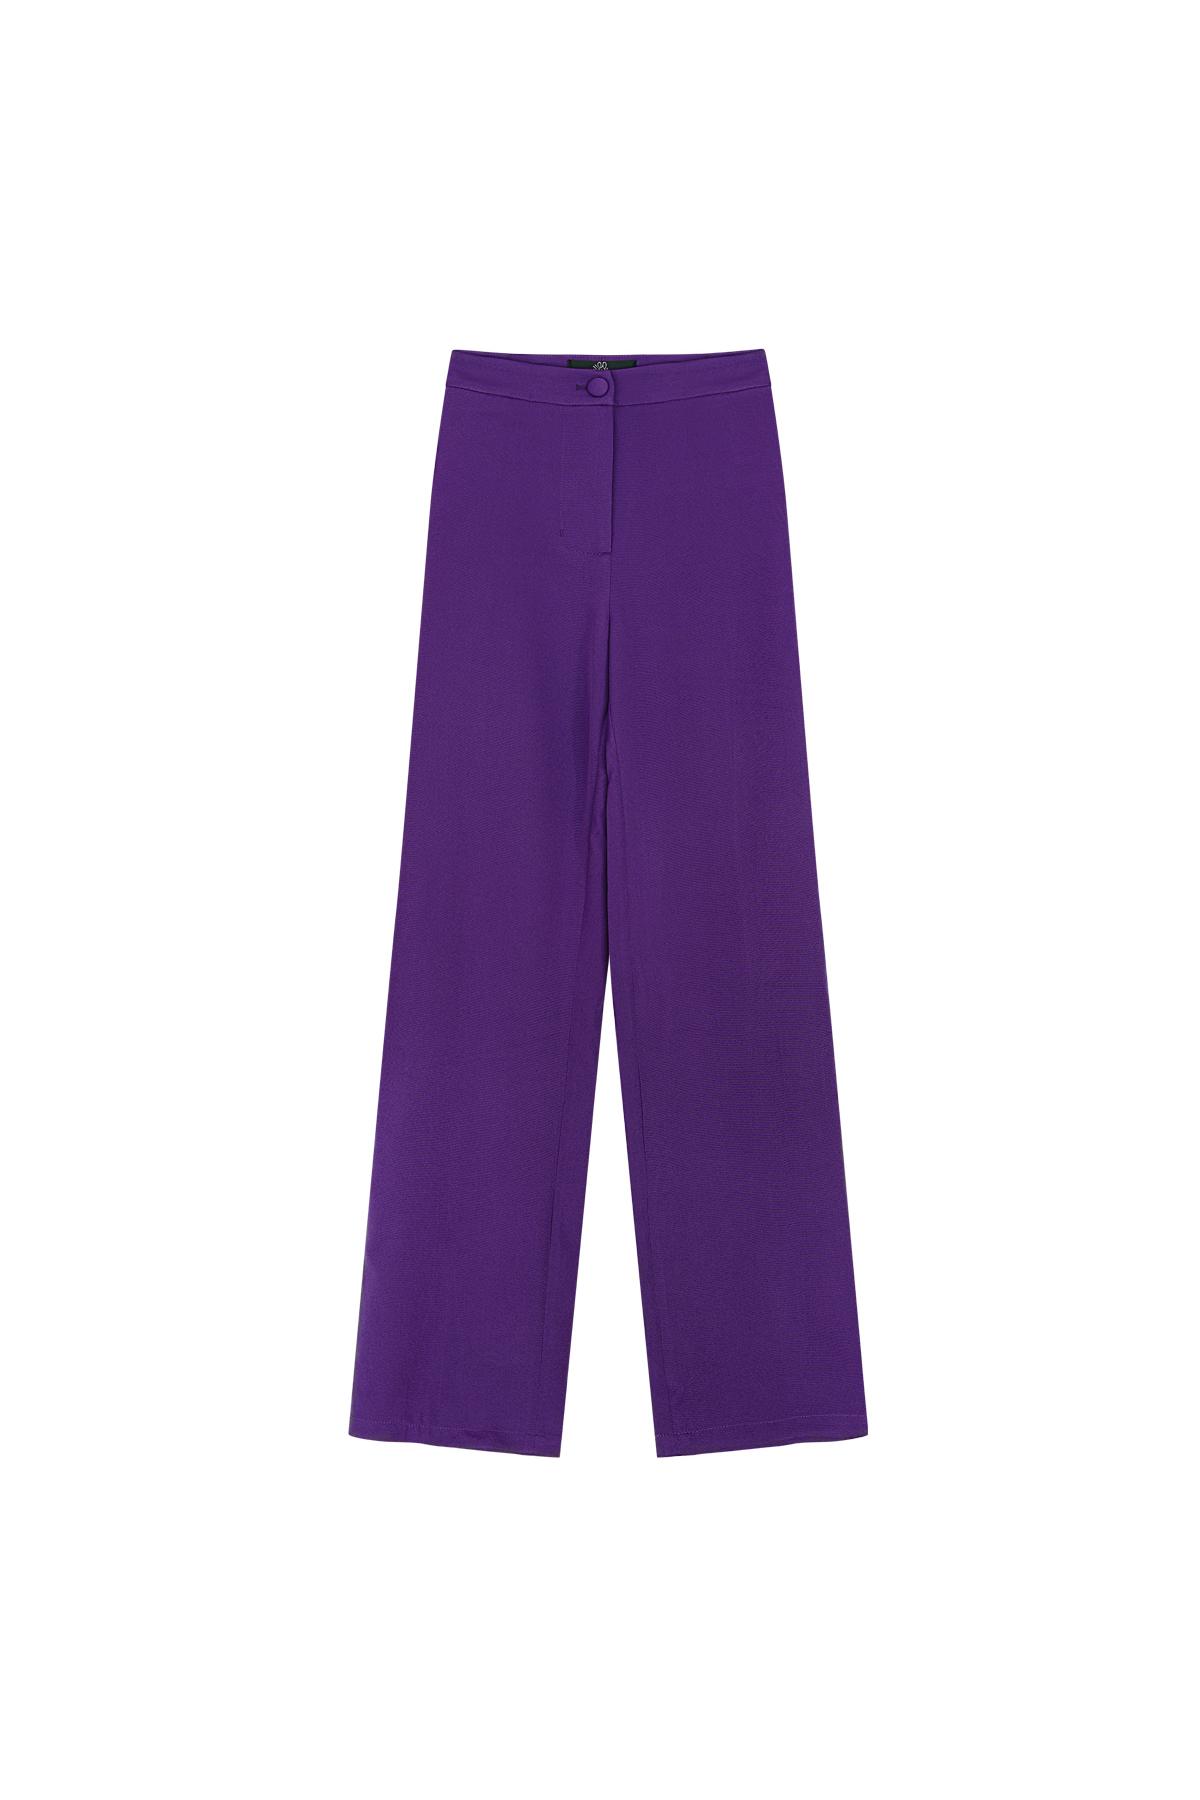 Pantalones básicos - Imprescindibles para las vacaciones Morado S